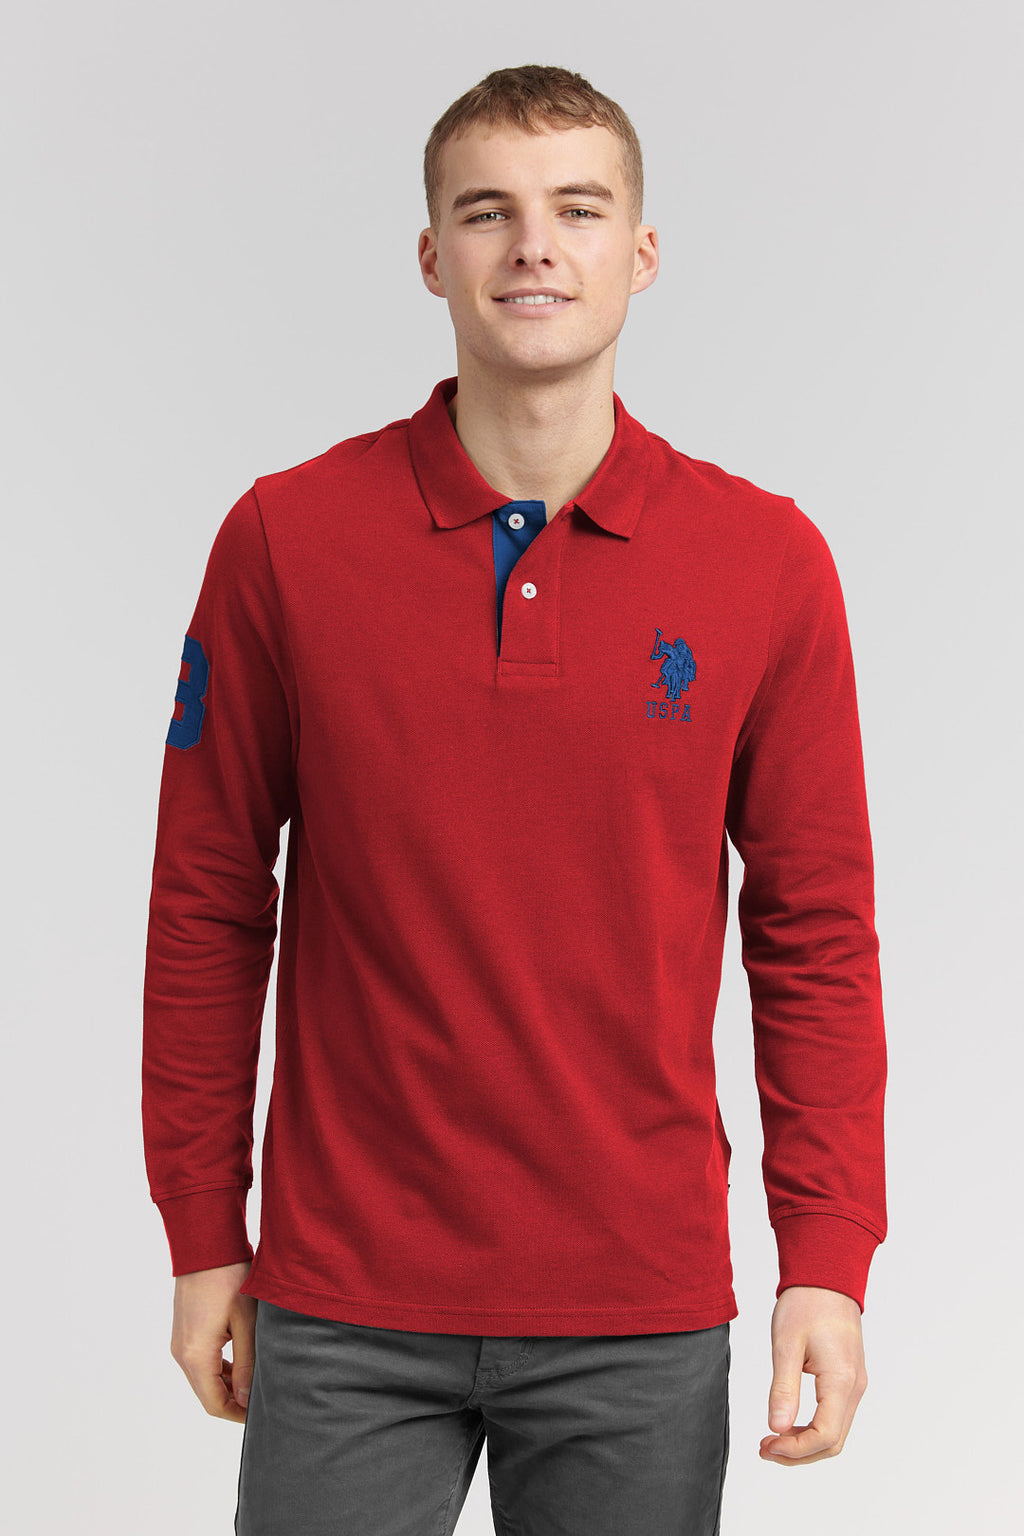 U.S. Polo Assn. Mens Player 3 Long Sleeve Polo Shirt in Biking Red – U ...